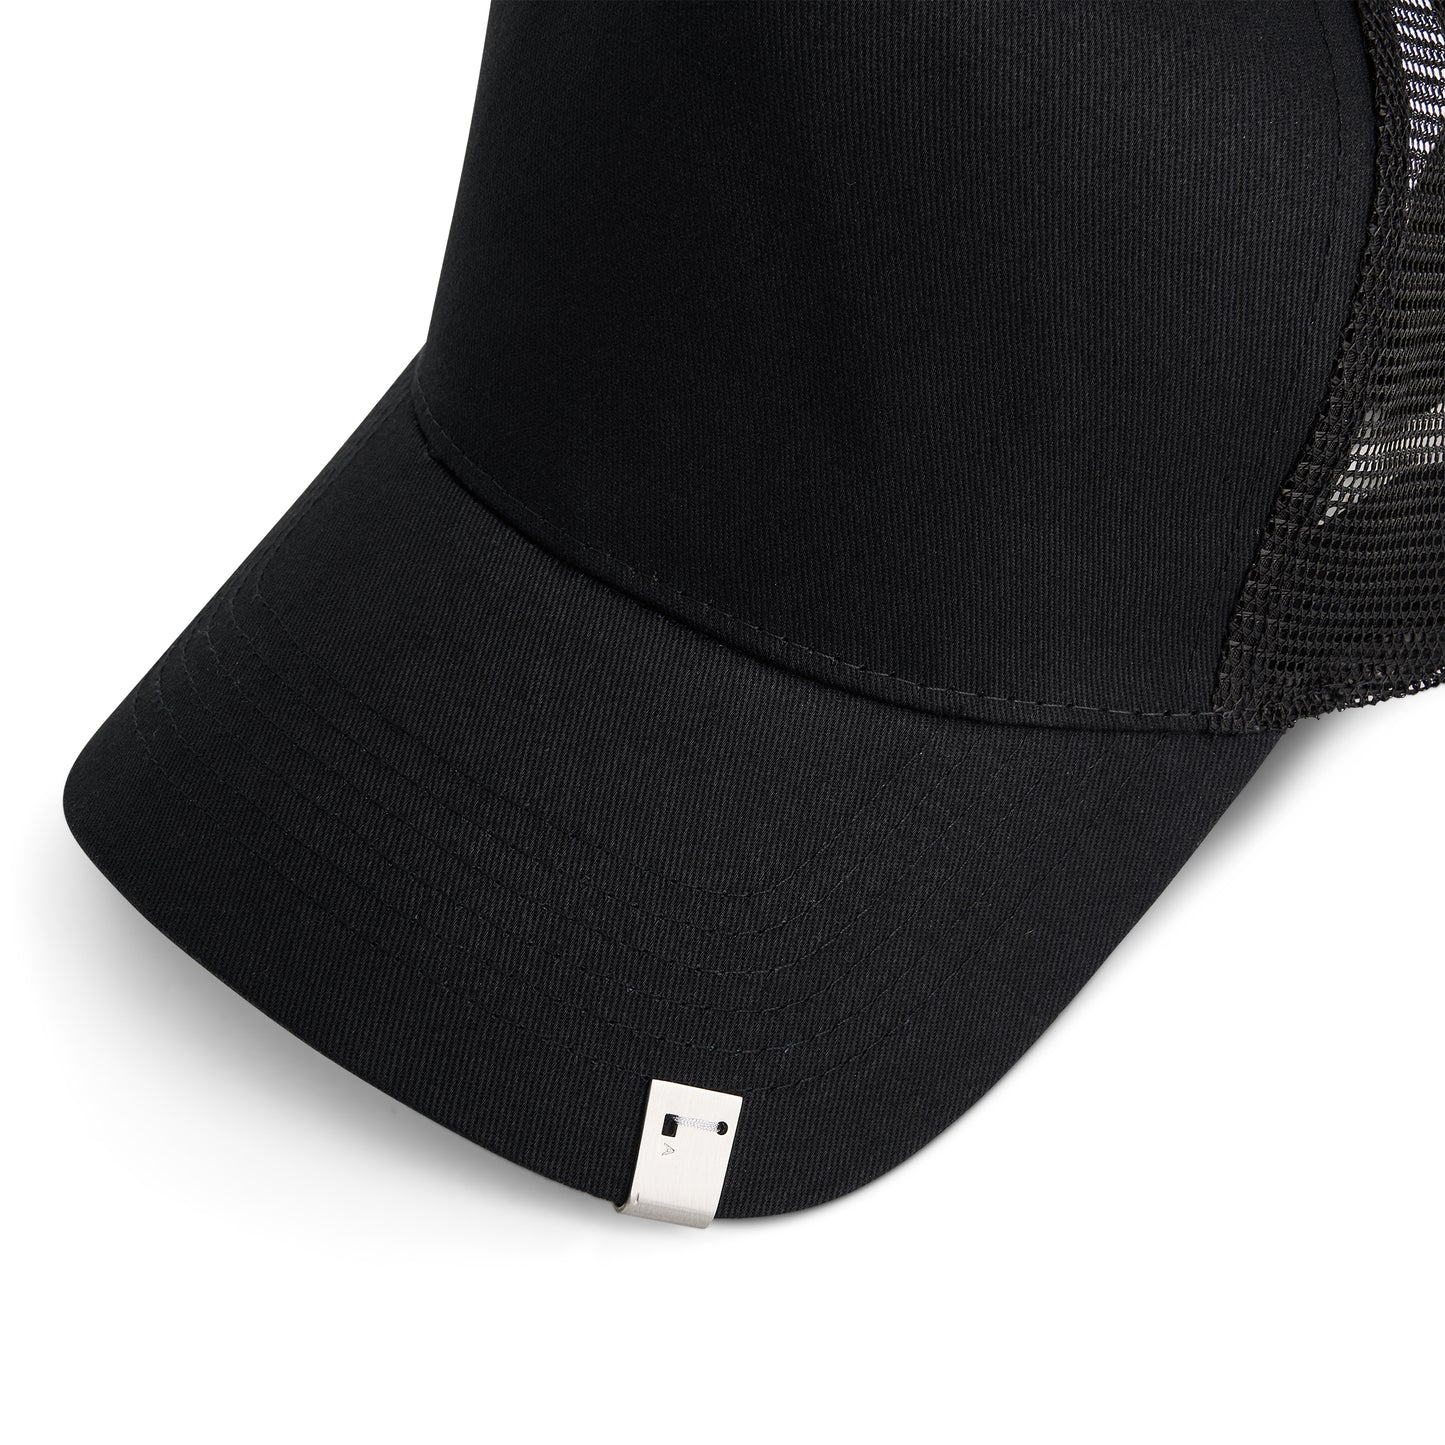 Lightercap Trucker Cap in Black